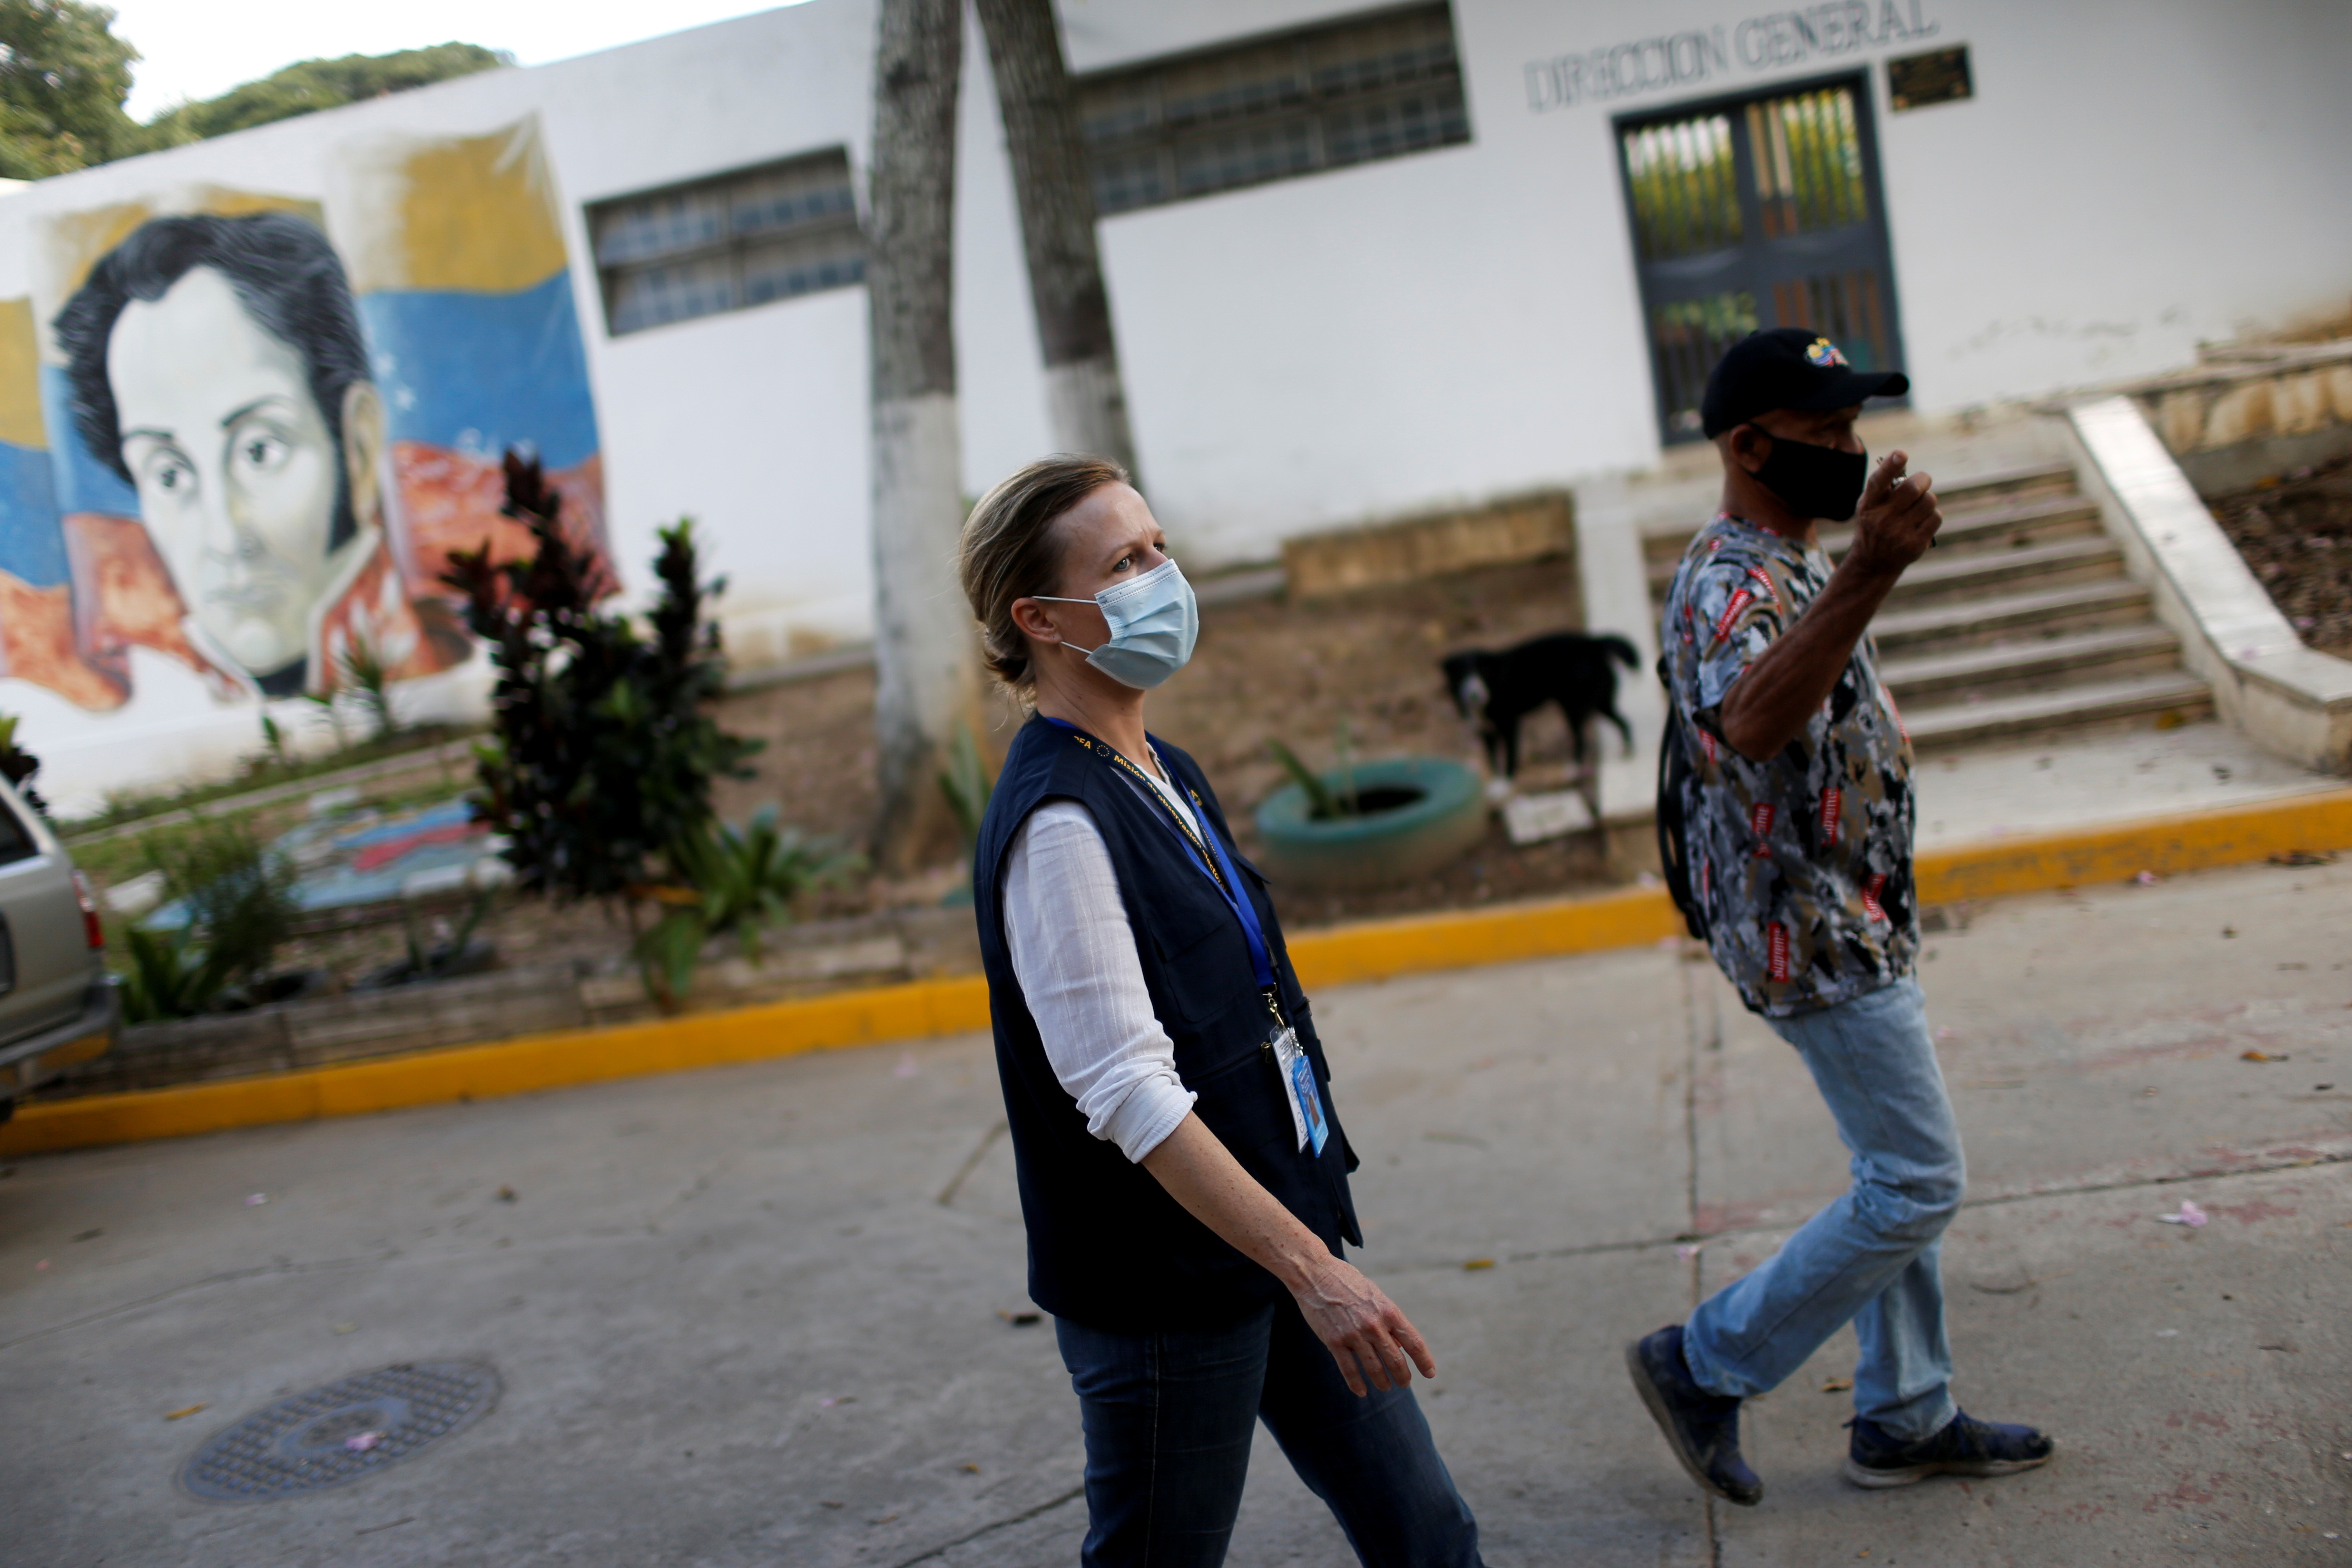 Back in Venezuela, EU observers plead for 'patience' ahead of elections